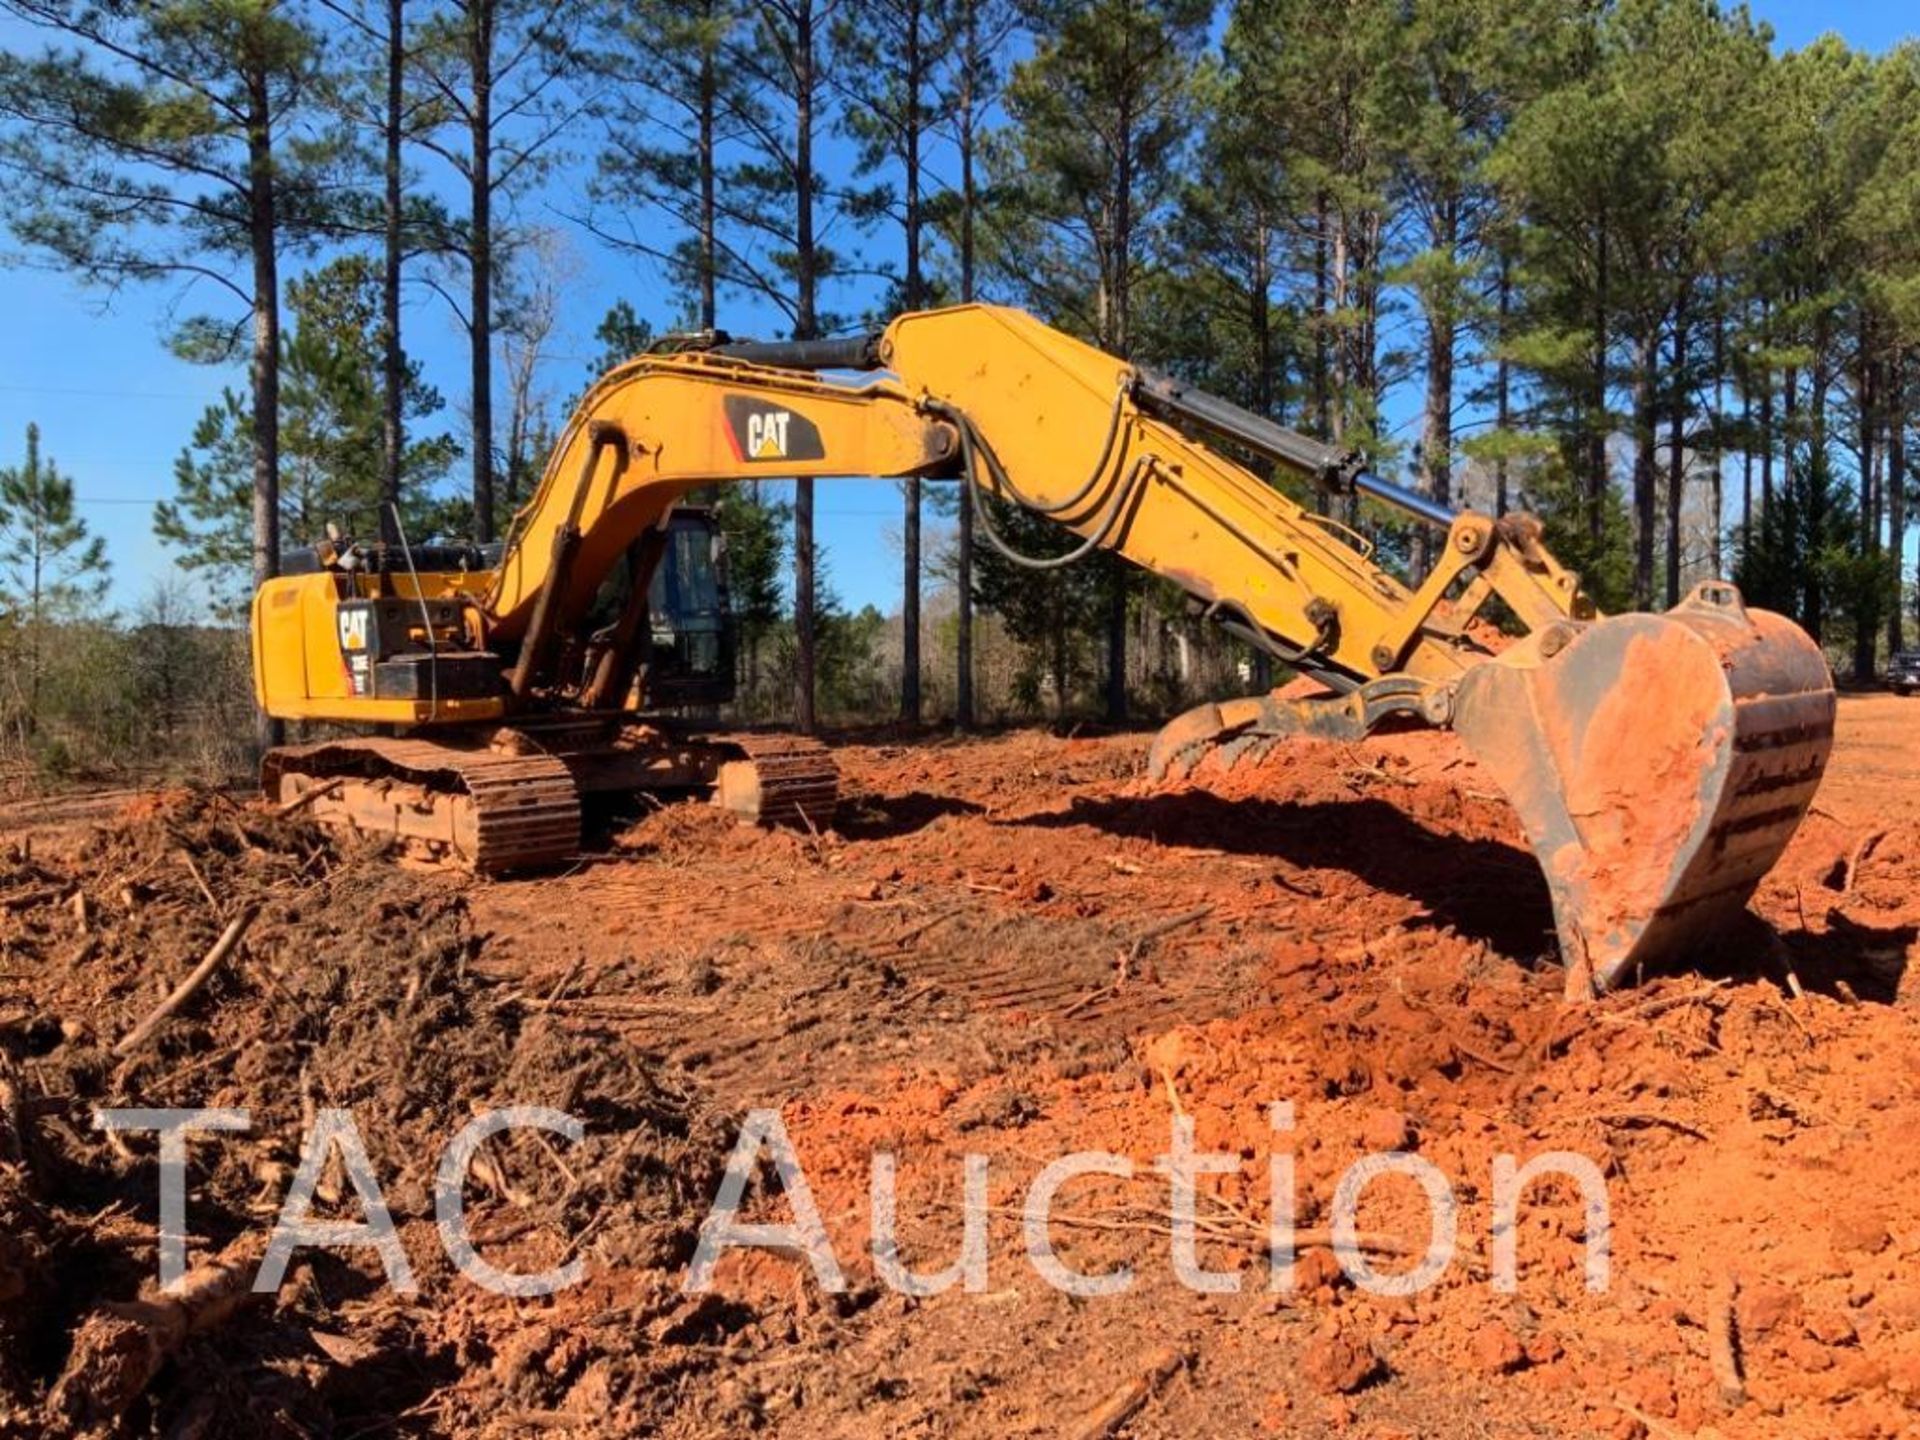 2019 Caterpillar 336EL Hydraulic Excavator